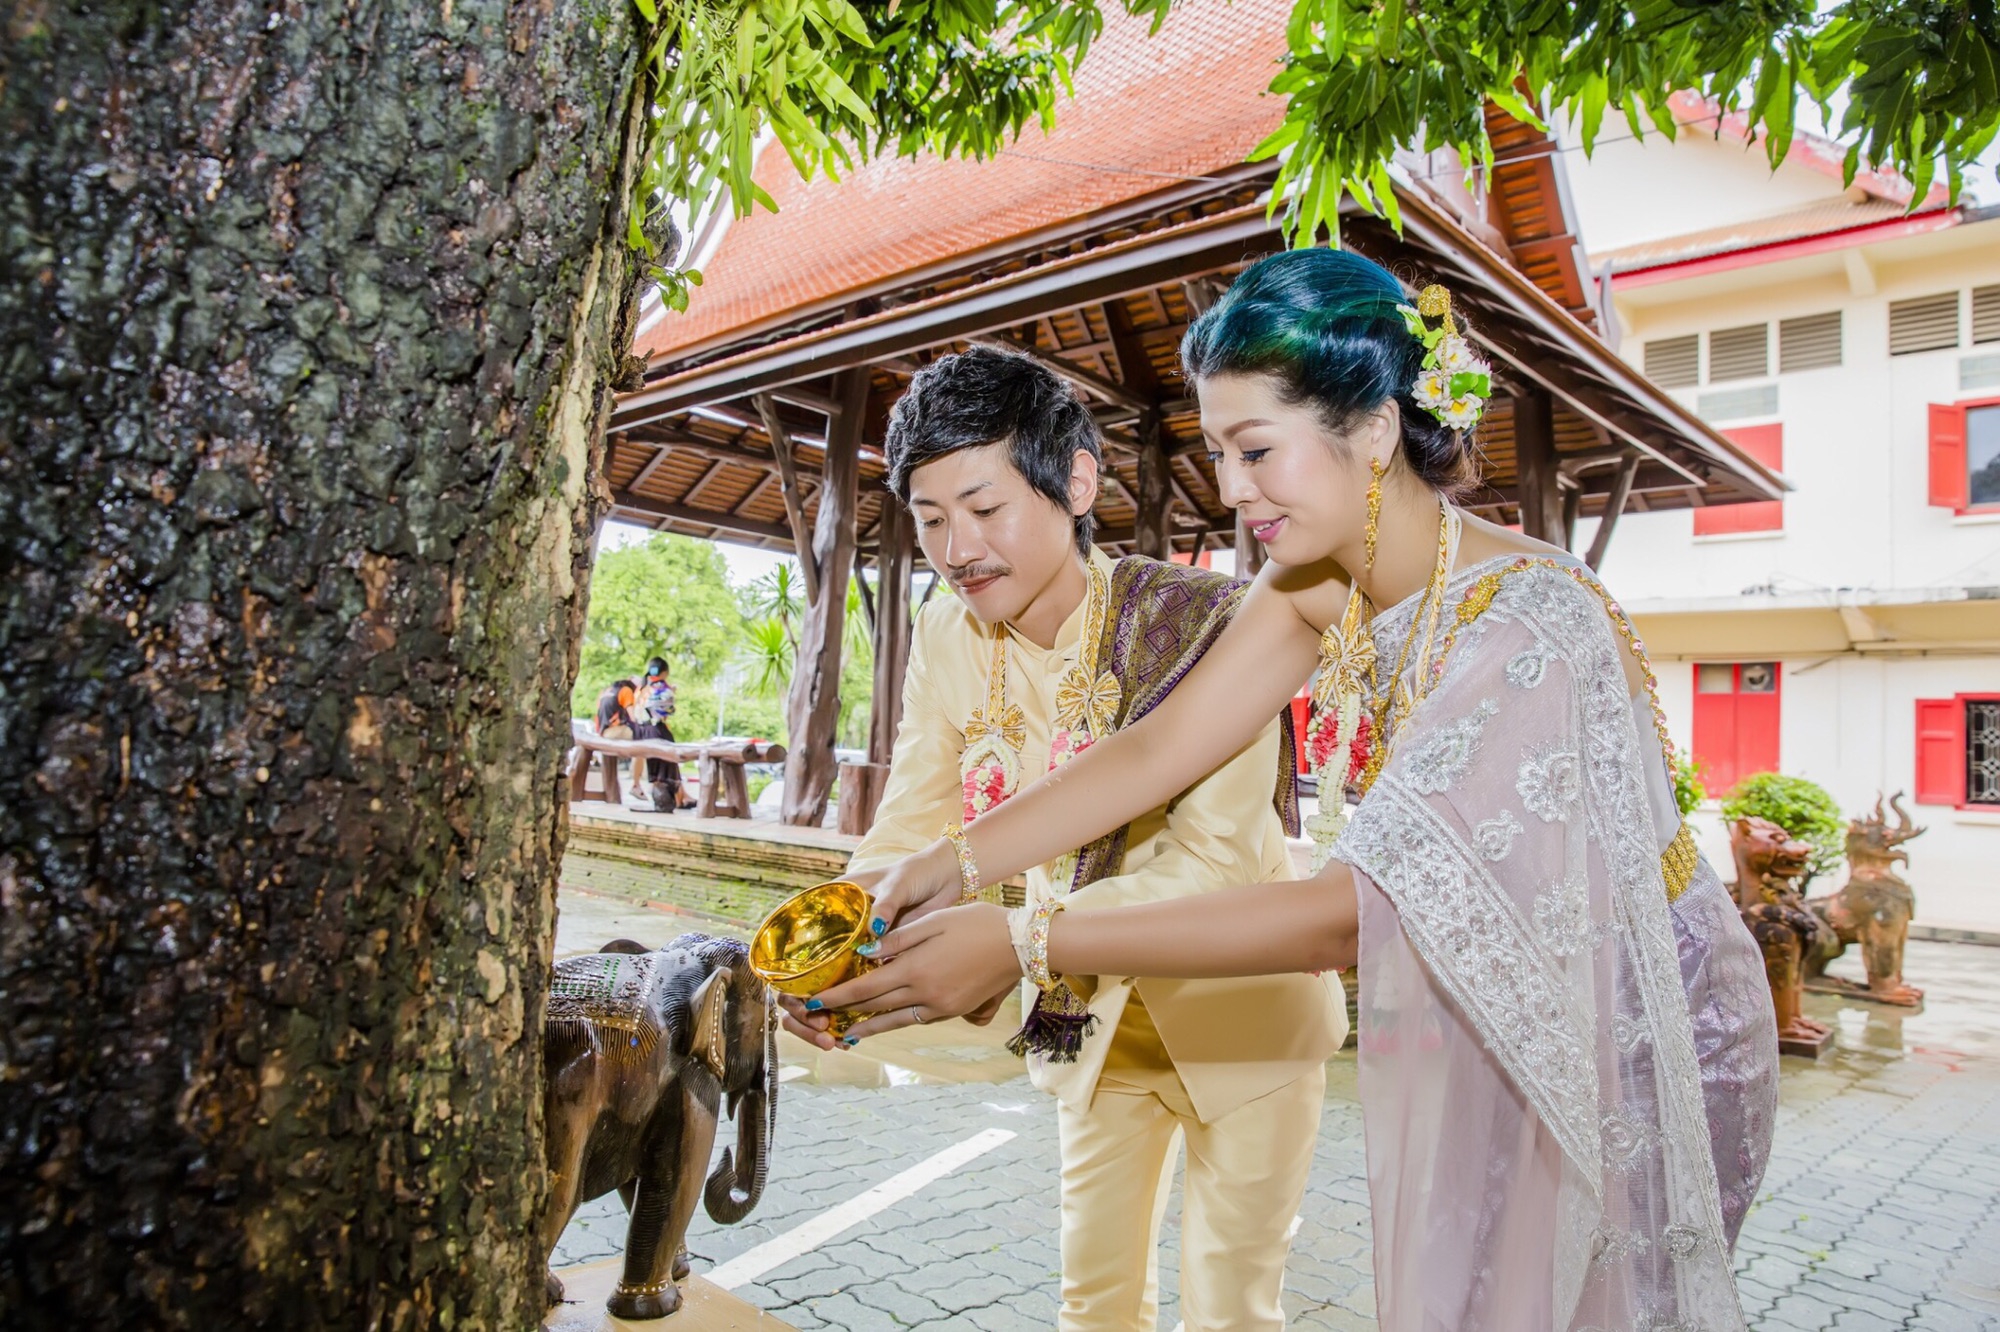 ウェディングドレスは着ない！タイの民族衣装を纏って、海外挙式を 